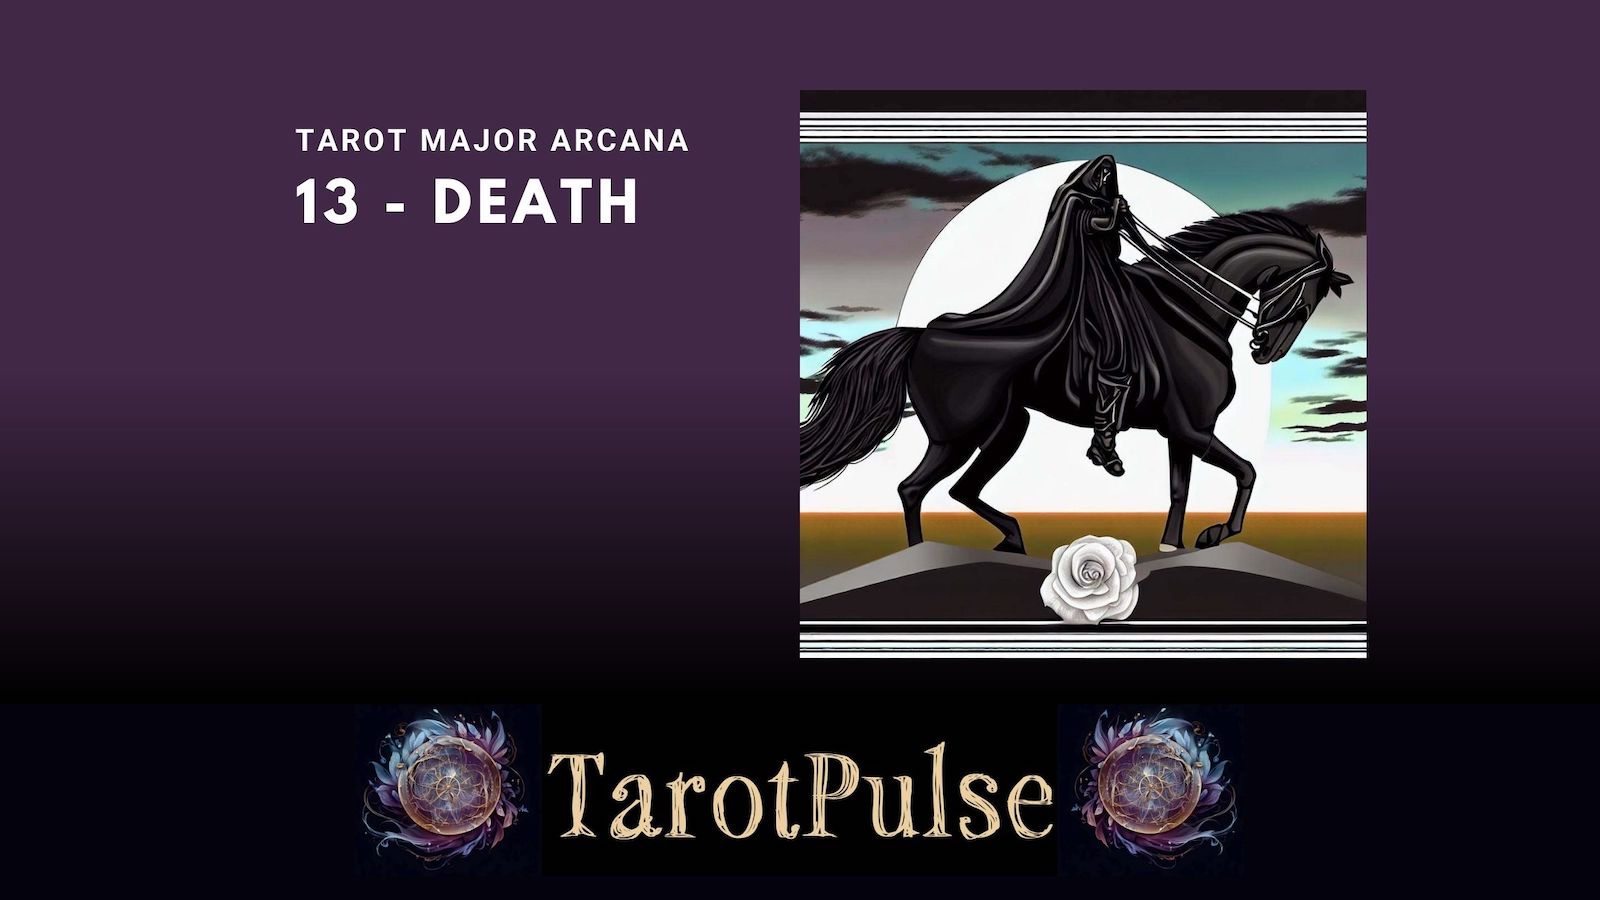 Tarot Major Arcana 13 - Death